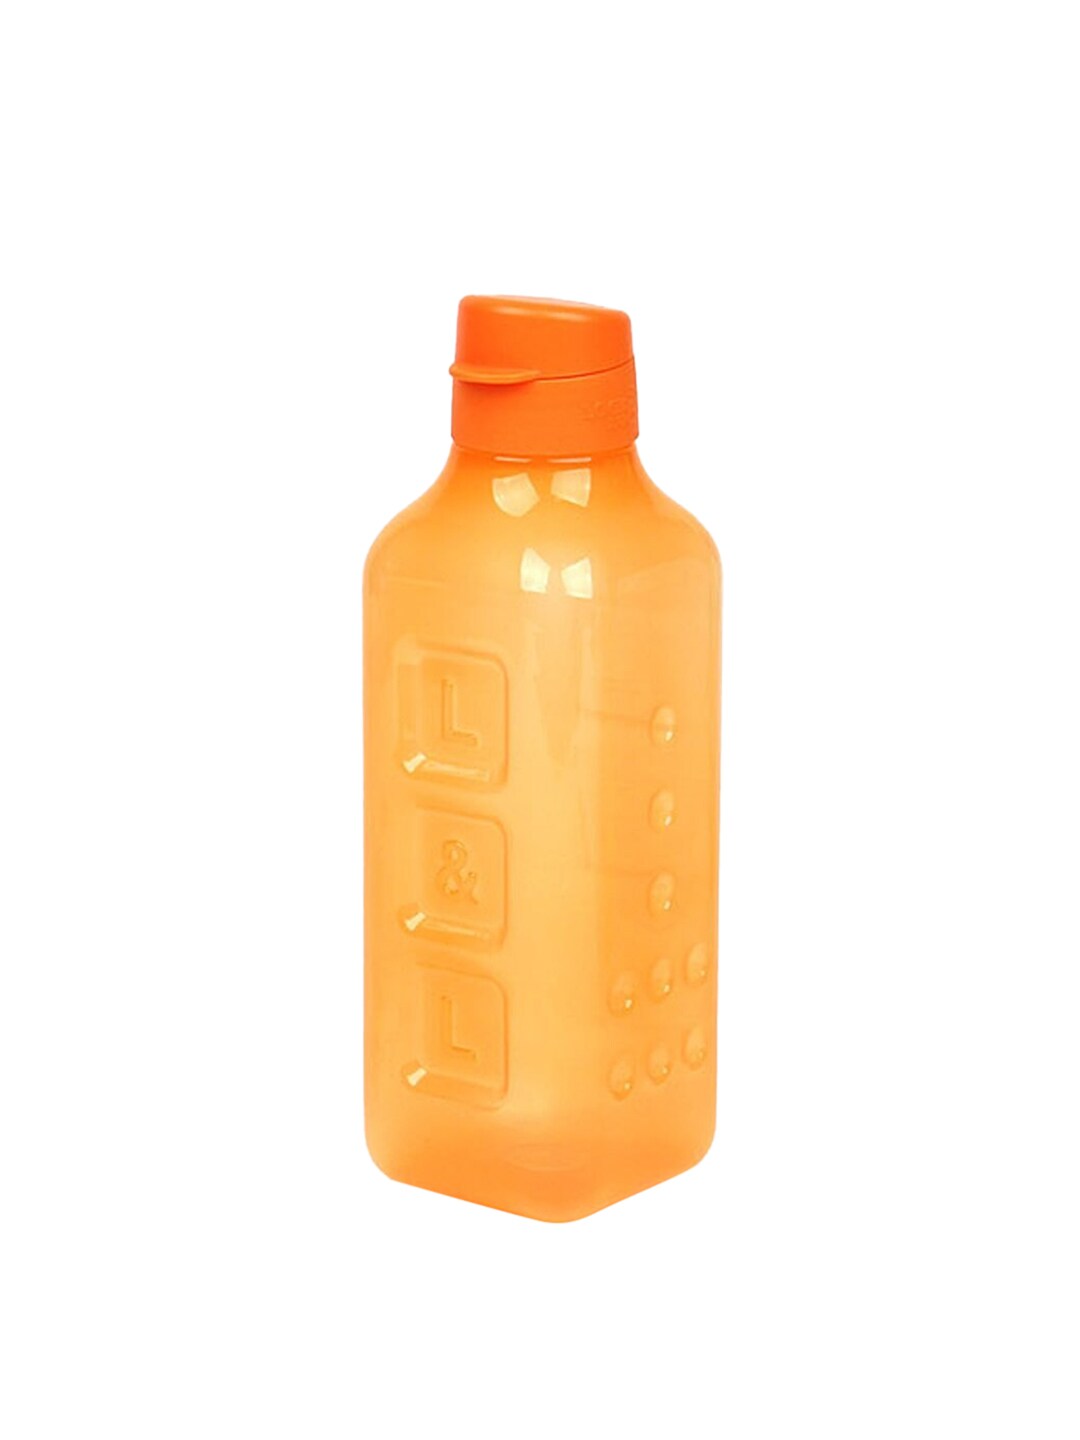 Lock & Lock Orange Plastic Water Bottle 1Ltr Price in India